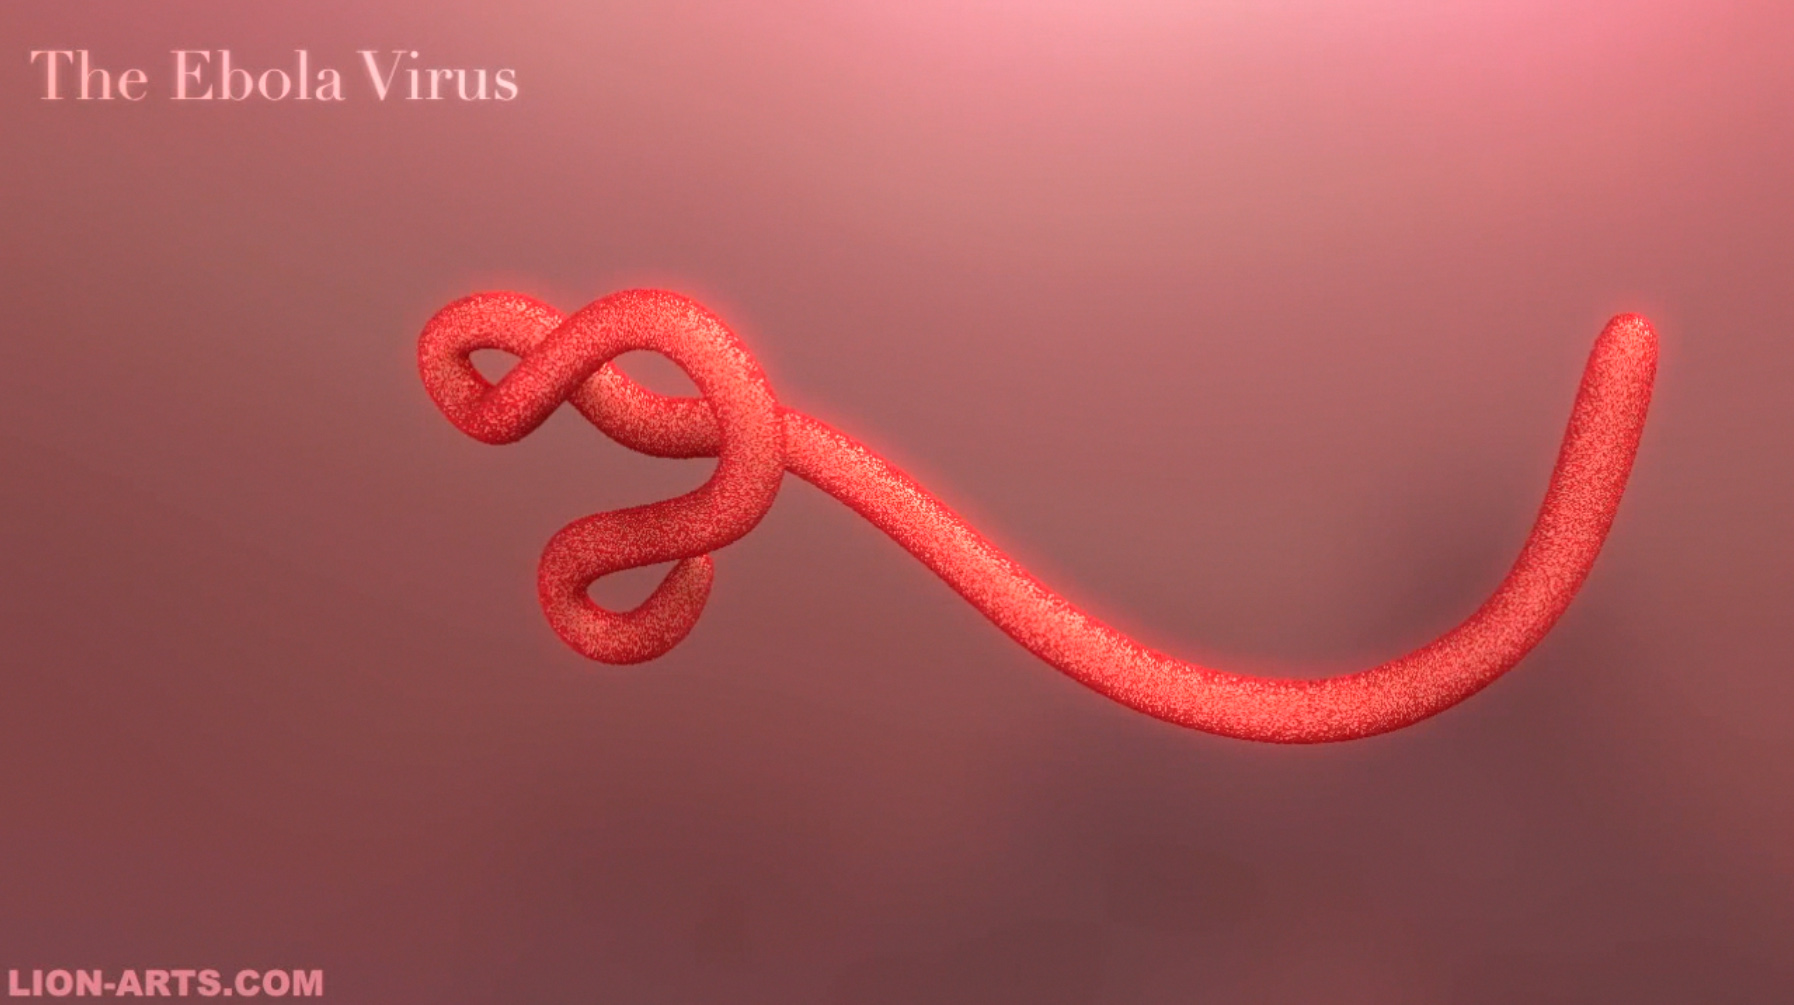 Ebola1_Intro_Lion-Arts_Daniel_E_De_Leon.jpg